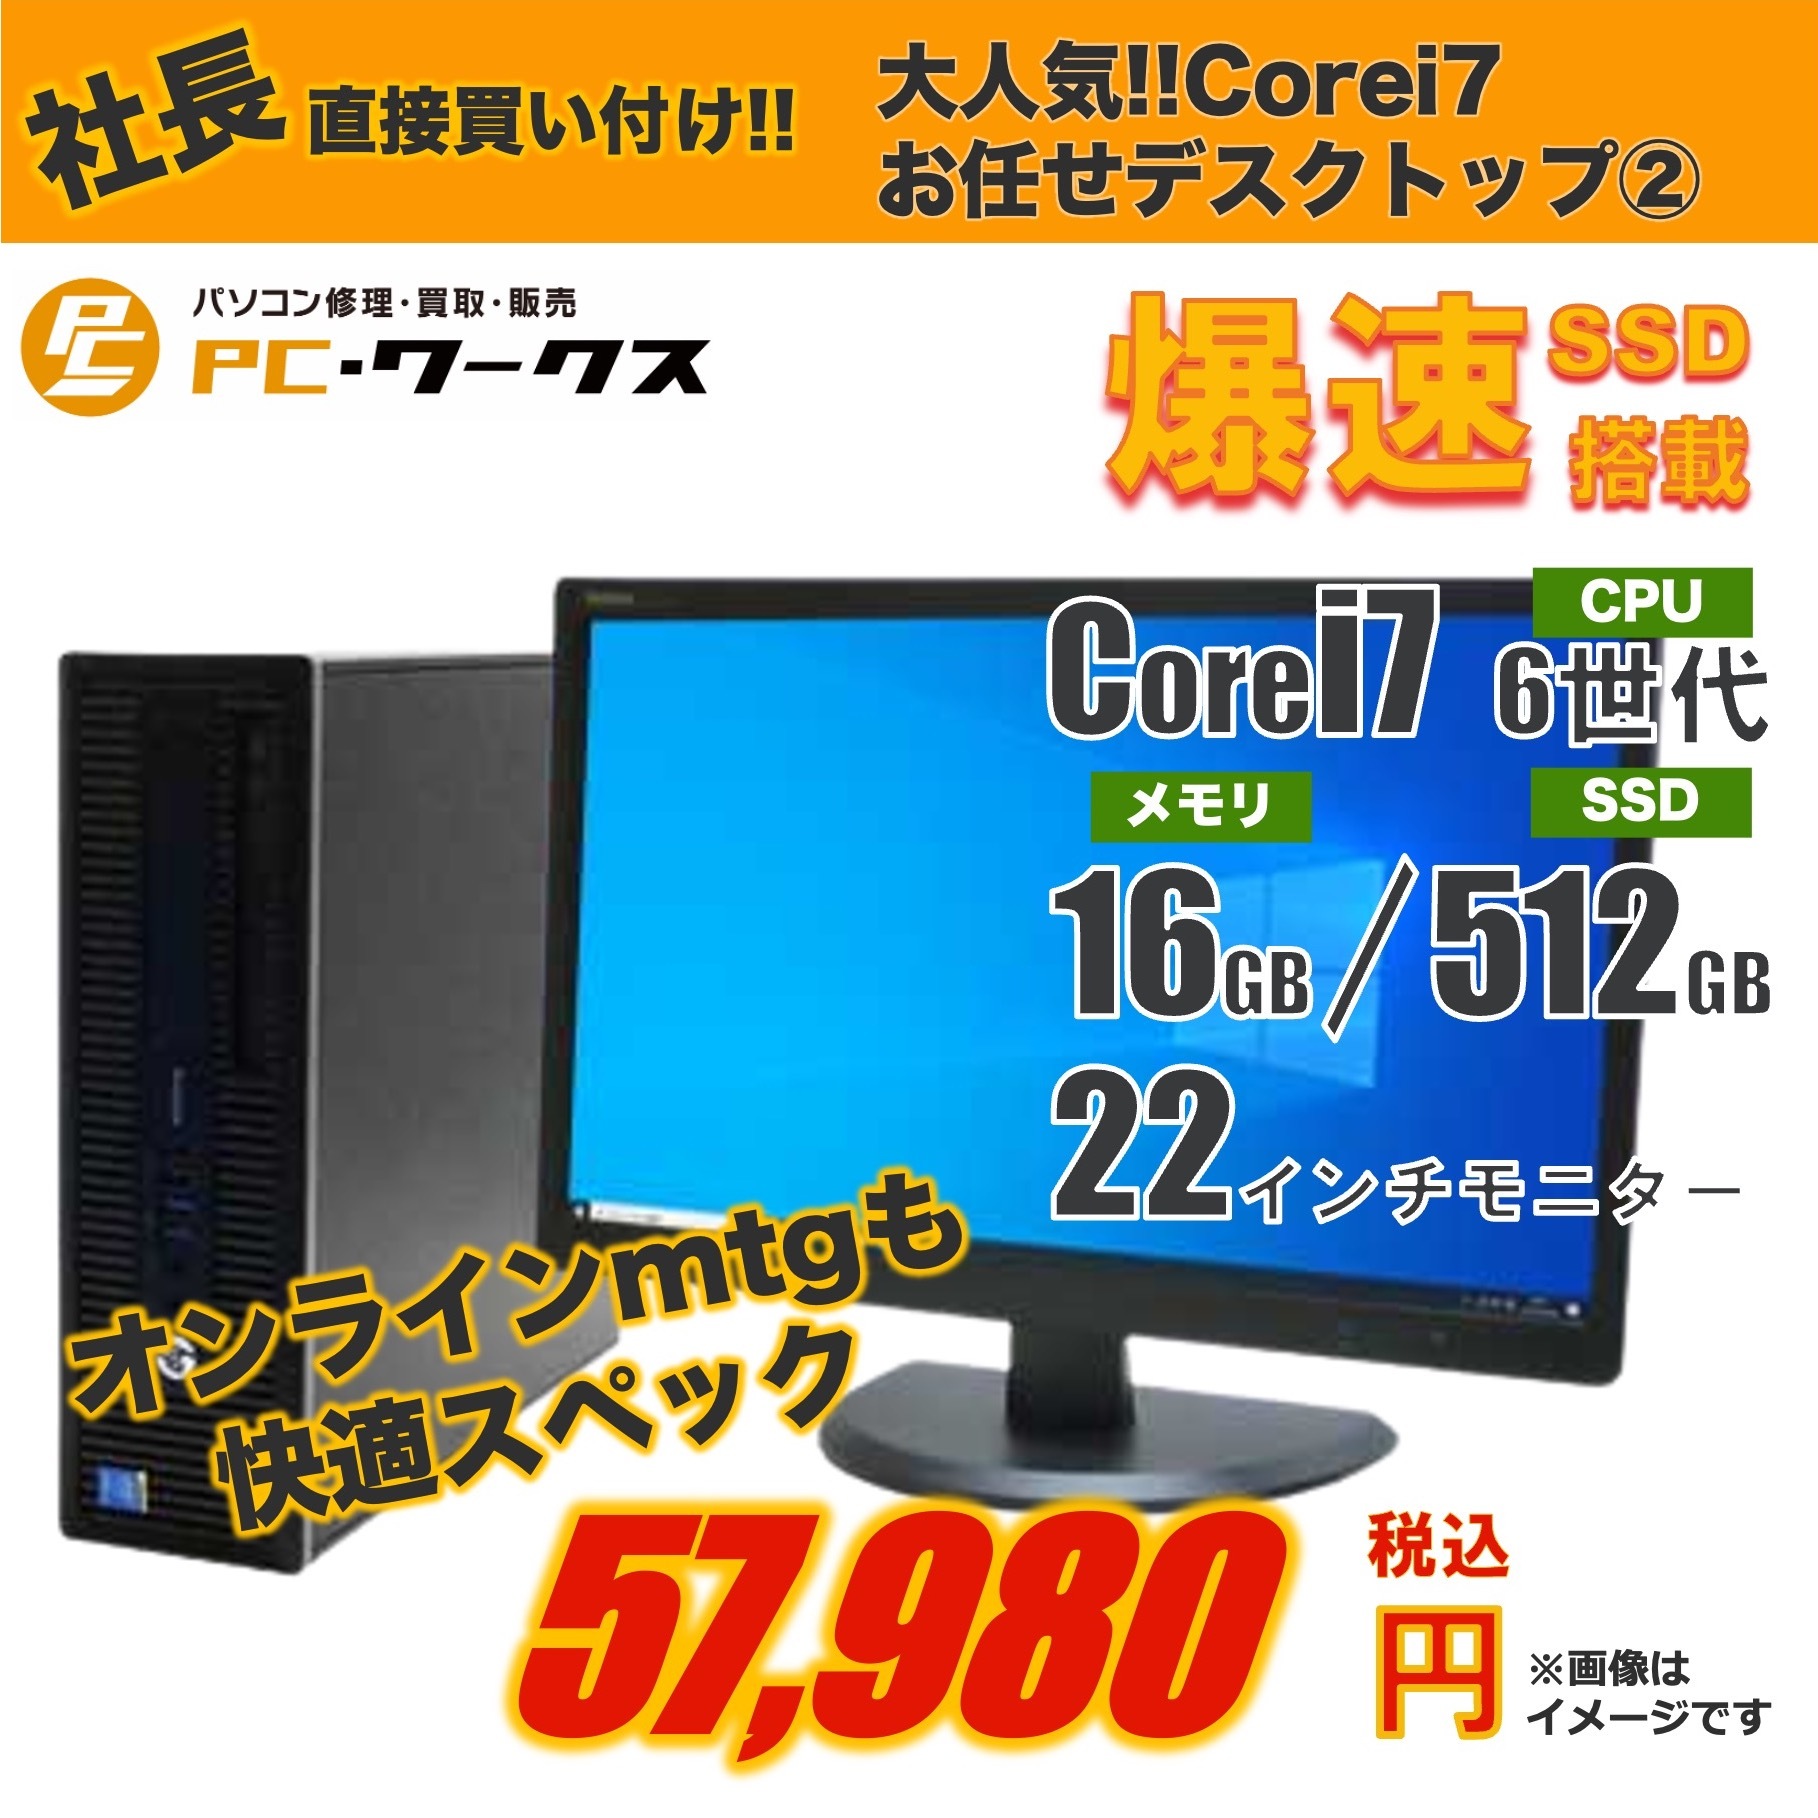 大人気 Corei7 お任せデスクトップパソコン②/22inchモニター